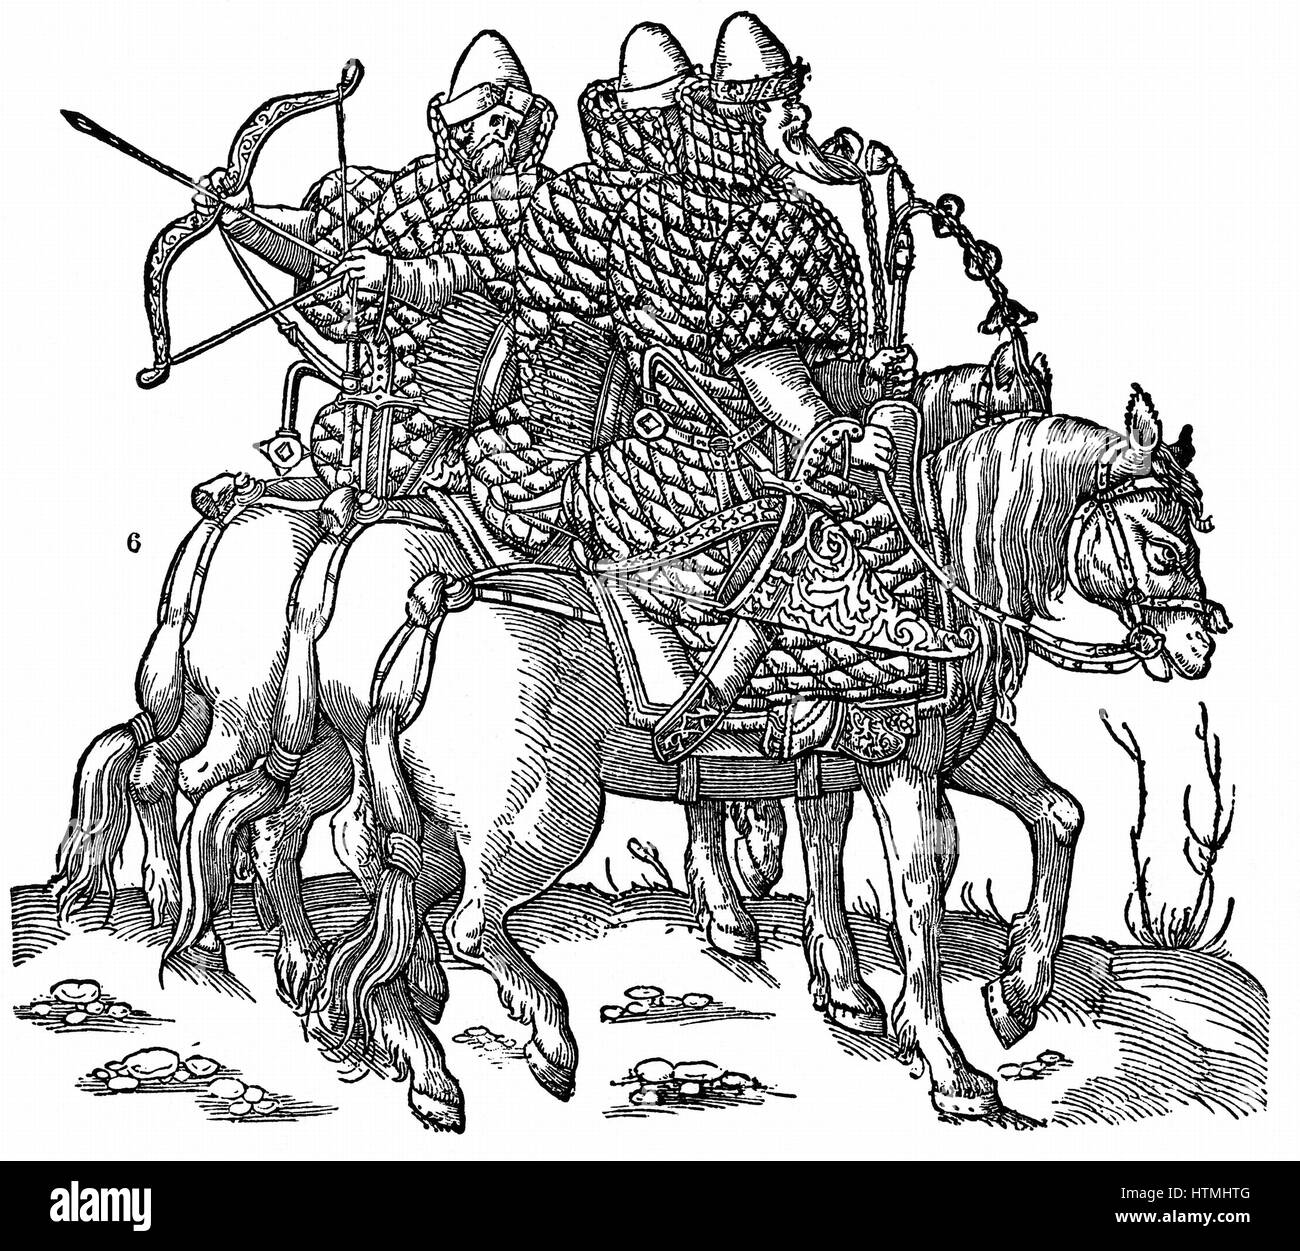 La muscovite monté guerriers équipés avec des arcs et des flèches, des épées et des armures matelassées. Gravure sur bois, 1556 Banque D'Images